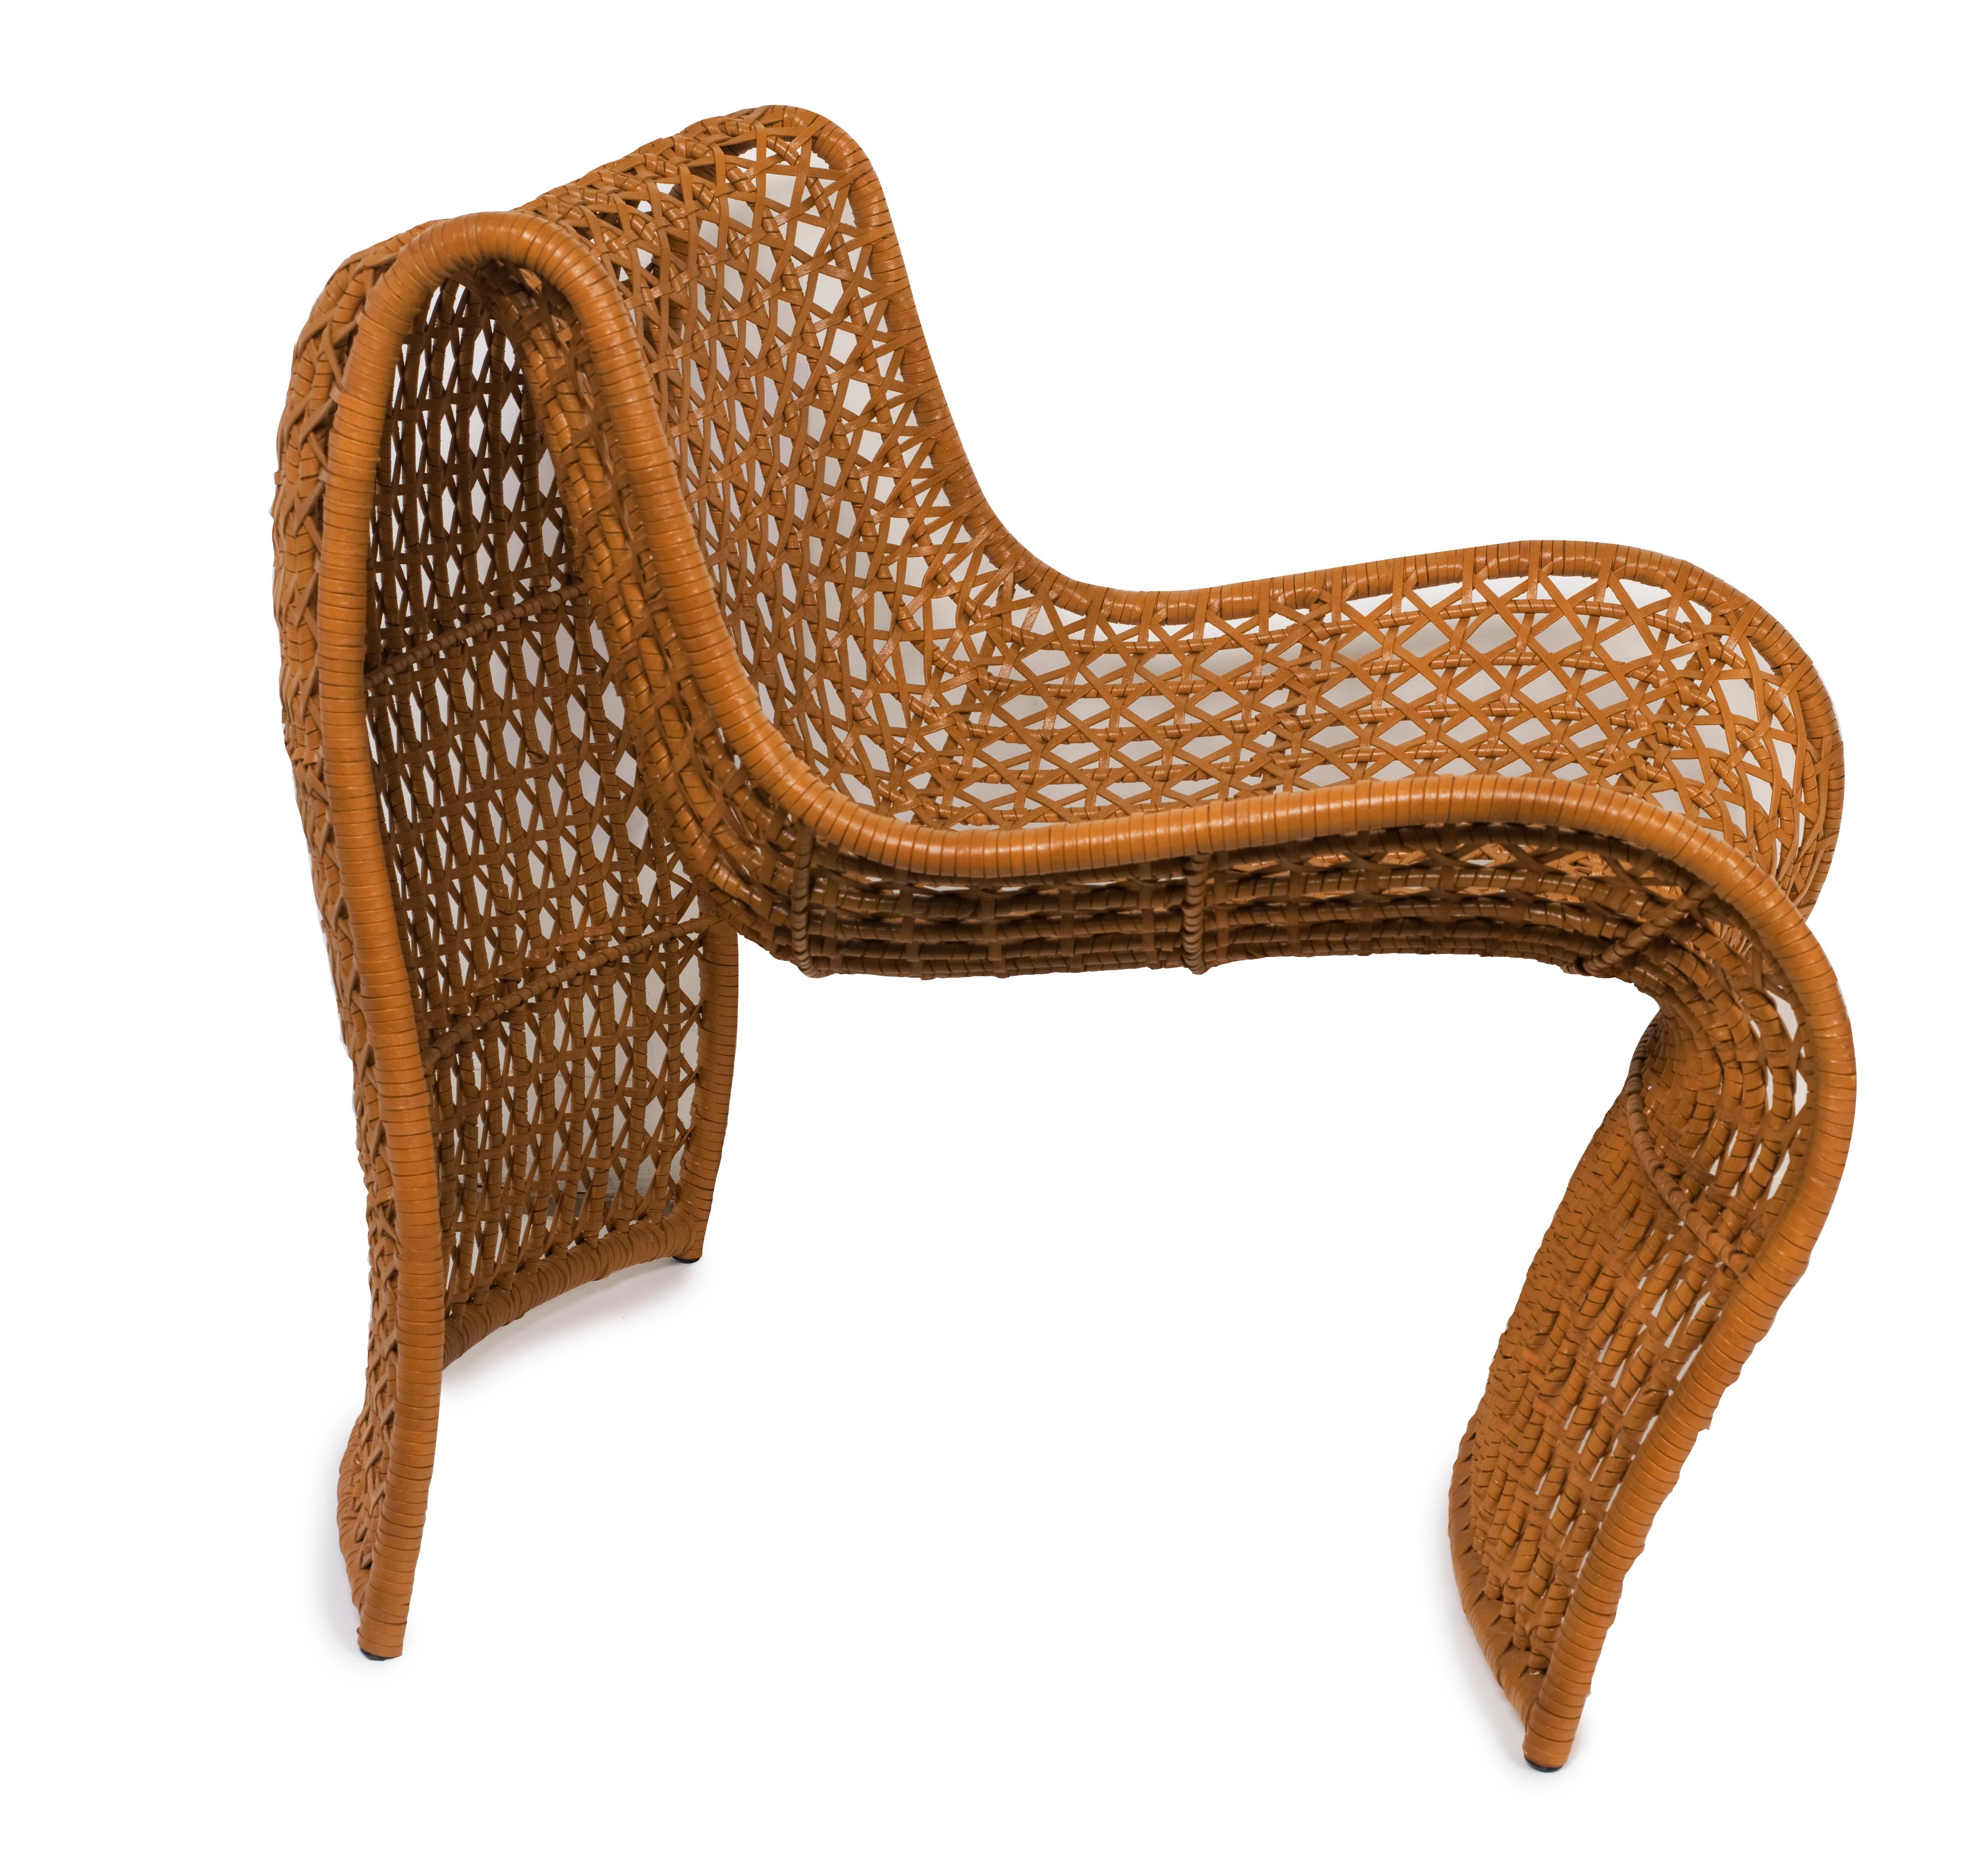 La chaise Lola est un véritable témoignage de la beauté du design et du confort. La chaise se caractérise par un tissage ouvert de cuir qui recouvre un cadre aux formes sensuelles, créant ainsi une apparence frappante et accrocheuse. Cette